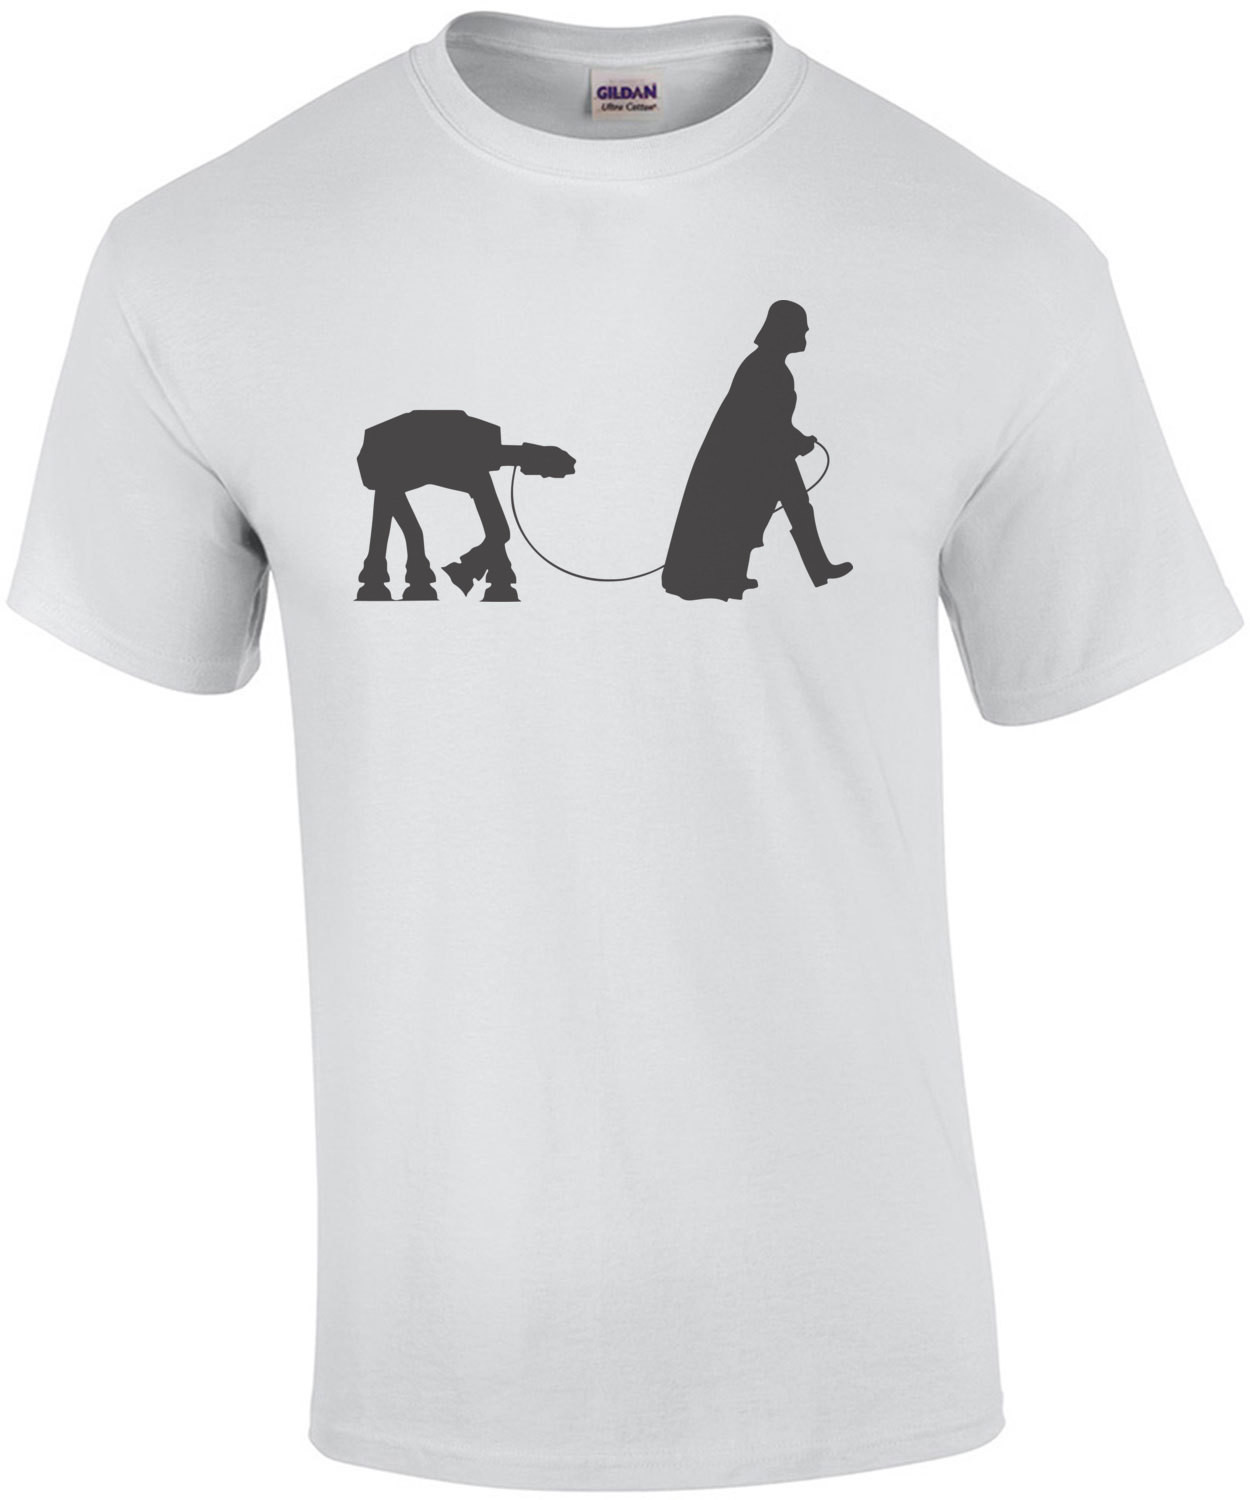 darth vader walking an at-at on a leash - Funny Star Wars T-Shirt